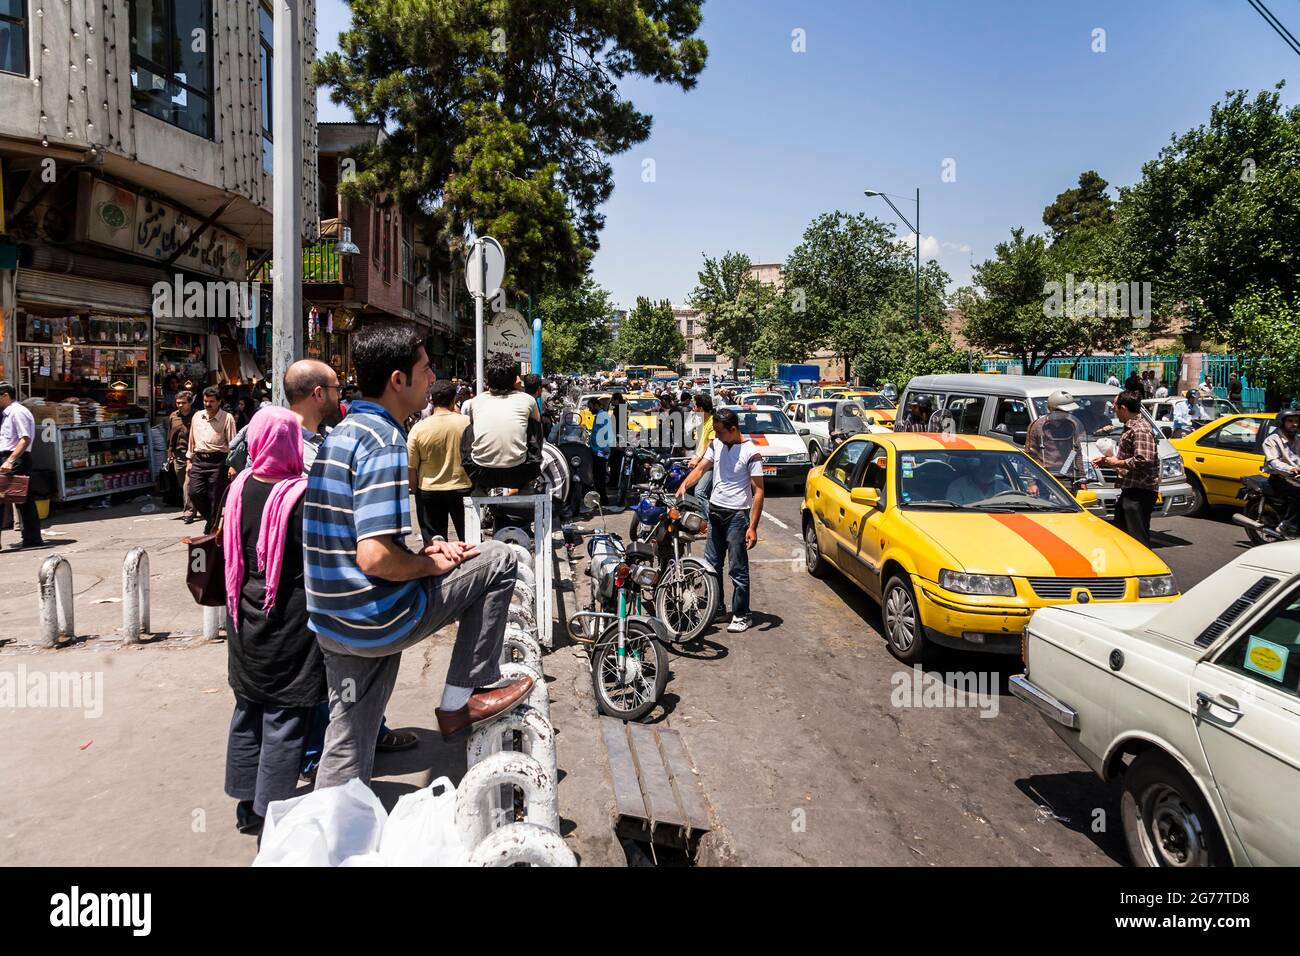 Ingorgo di traffico sulla strada principale, vicino al bazar di Teheran, centro commerciale storico, Teheran, Iran, Persia, Asia occidentale, Asia Foto Stock